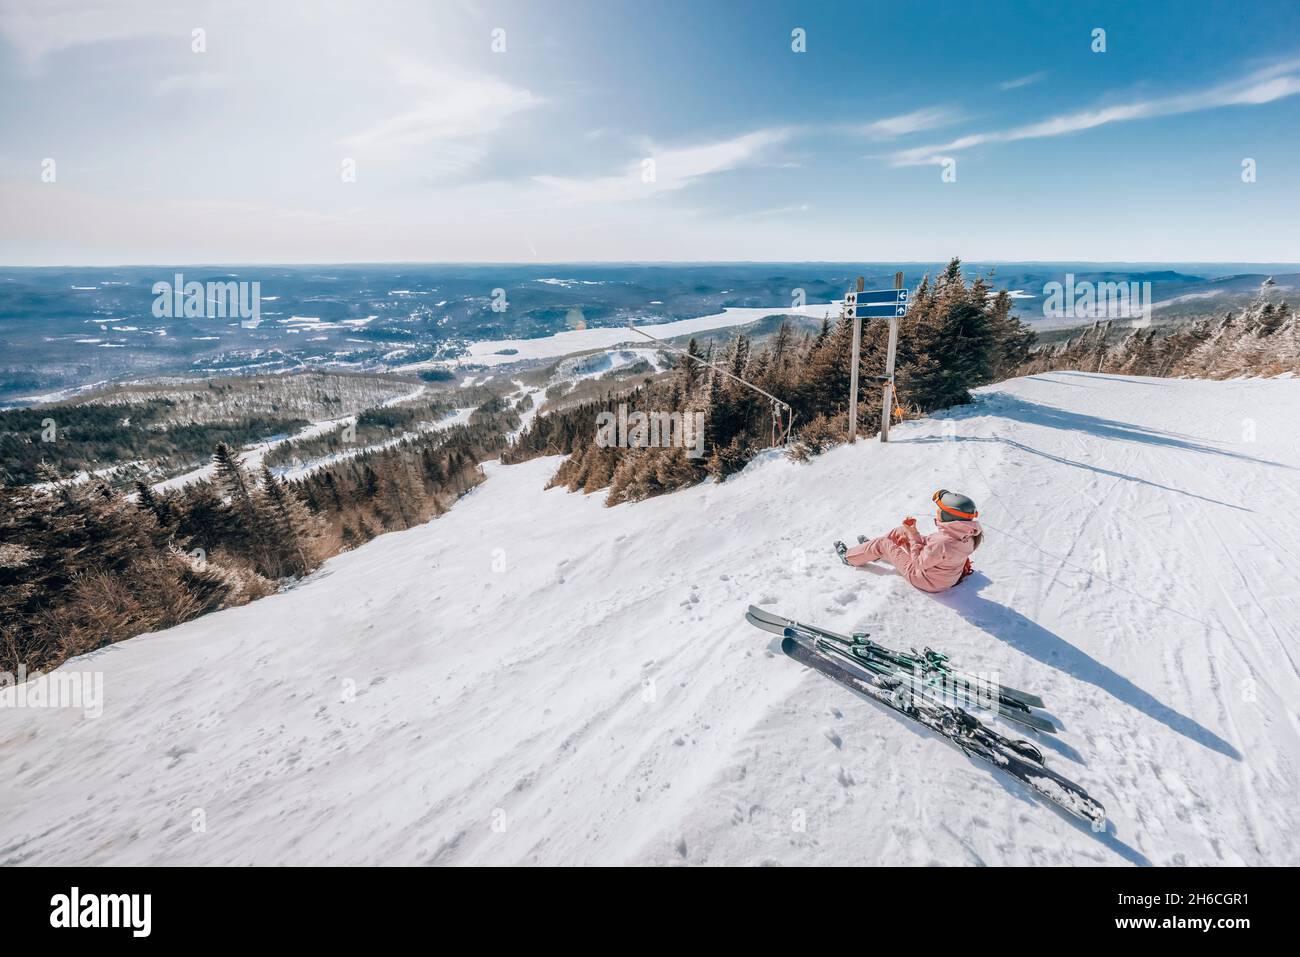 Sciare - Donna in sci fare una pausa guardando la vista incredibile della natura invernale paesaggio mangiare una mela. Sci alpino - sciatore andare a sciare in discesa a. Foto Stock